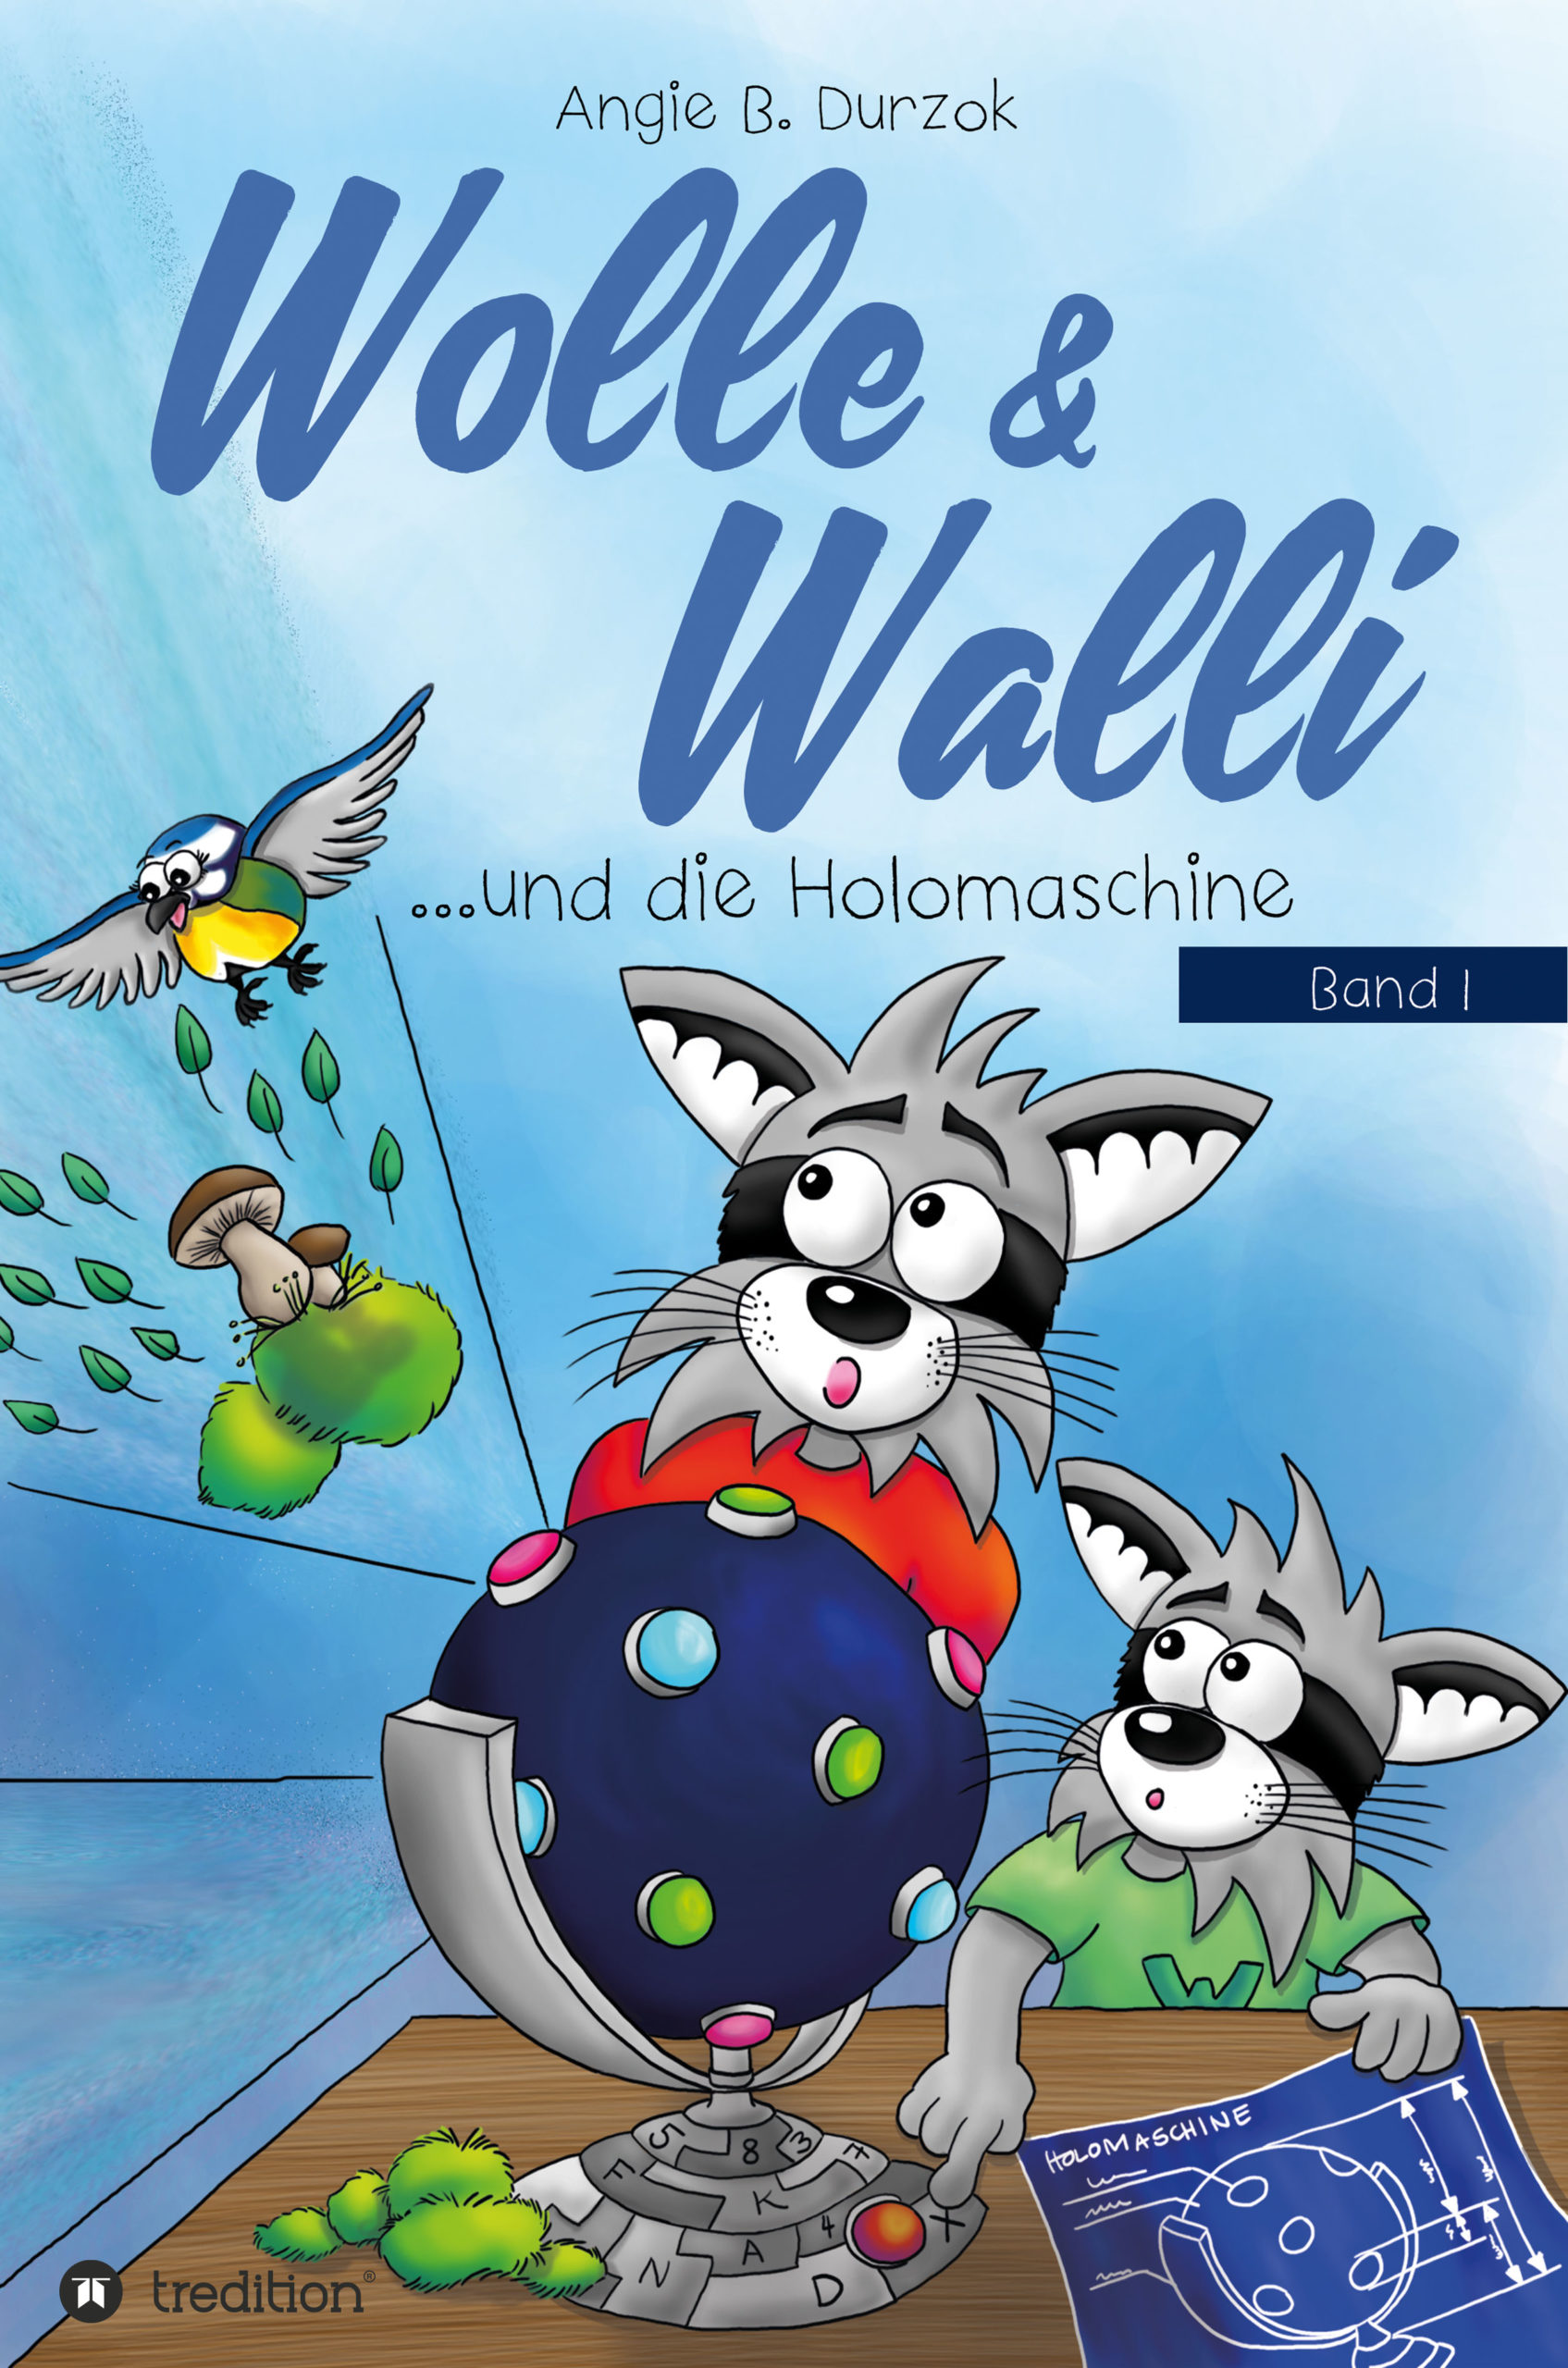 Wolle & Walli - Angie B.vDurzok